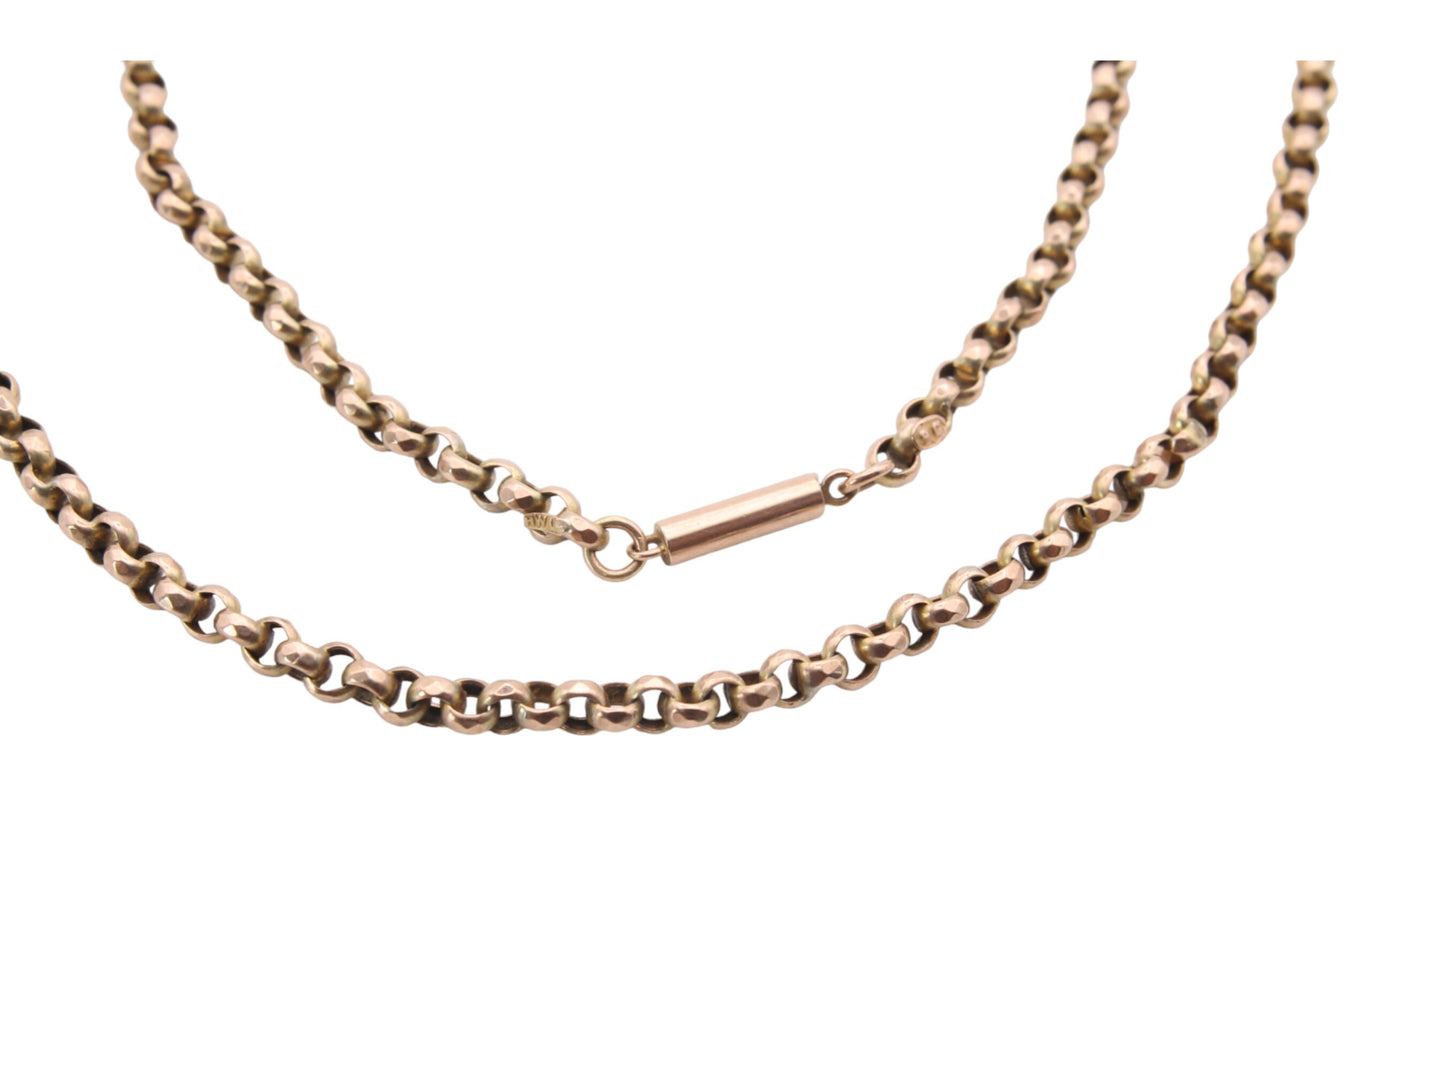 Antique 9ct Gold Faceted Belcher Link Necklace, 18.5"